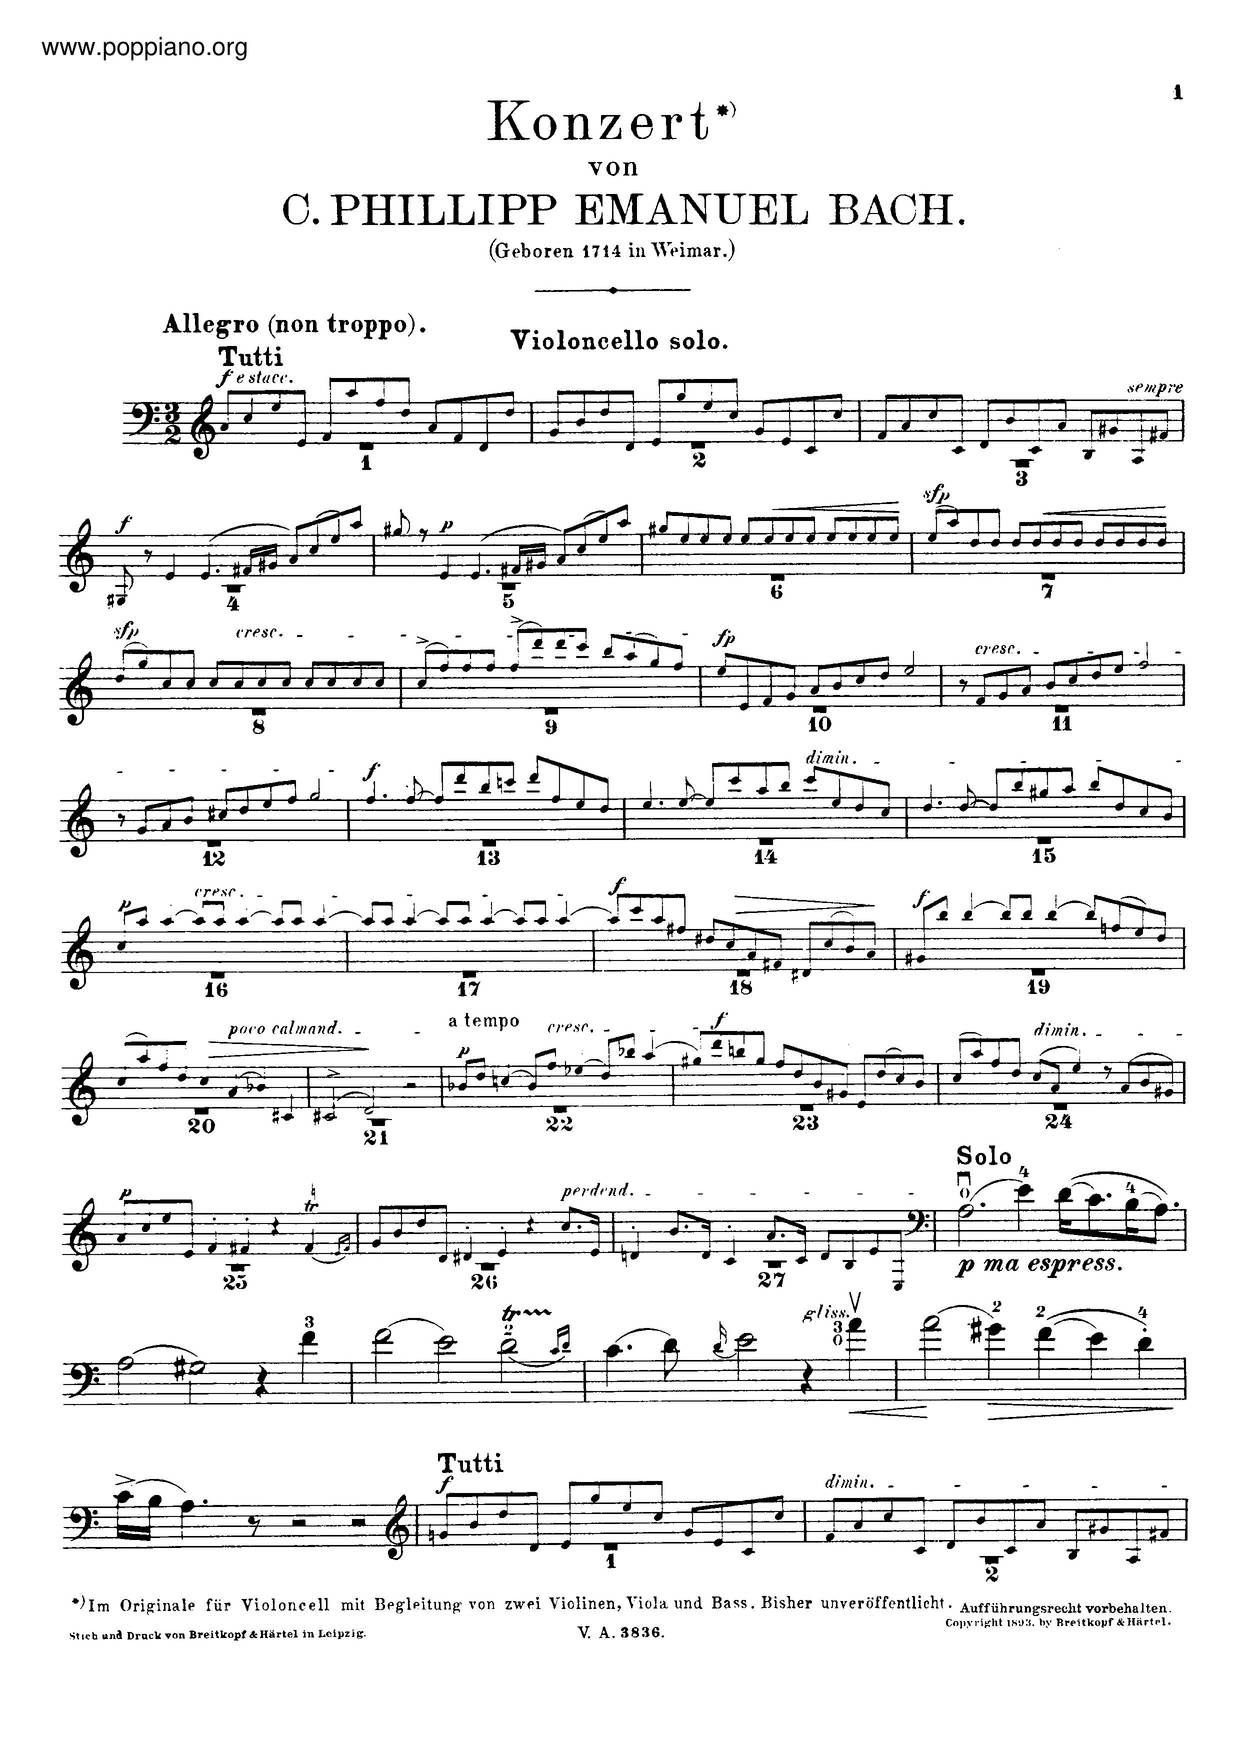 Cello Concerto In A Minor, H.432 Score